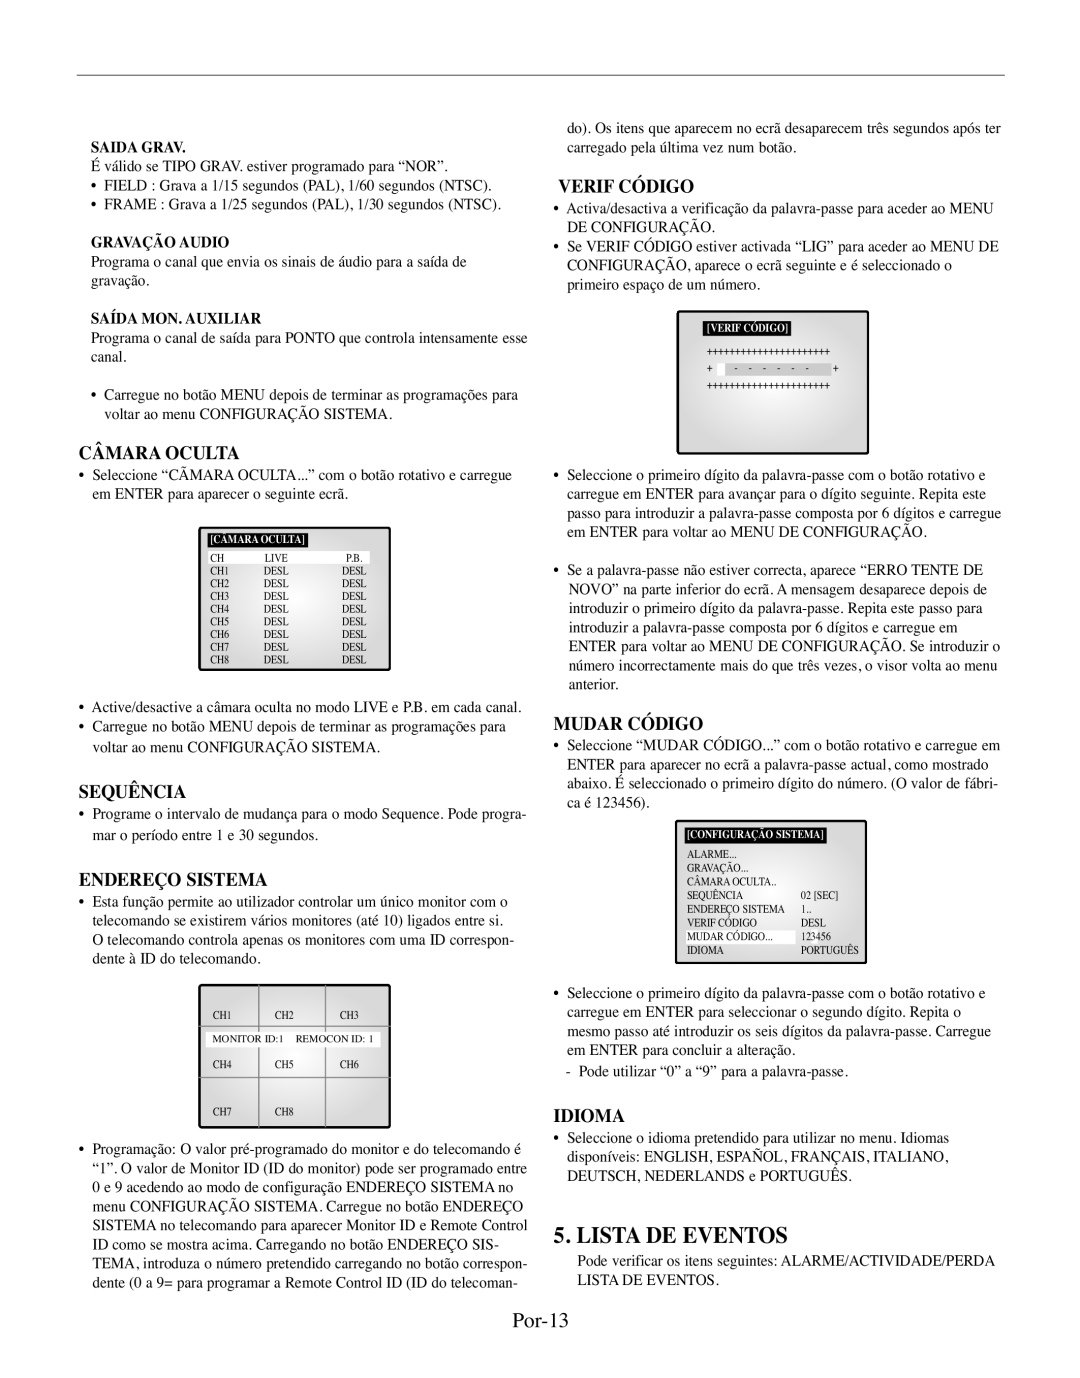 Samsung SMO-210TRP manual Lista De Eventos, Por-13, Câmara Oculta, Sequência, Endereço Sistema, Verif Código, Mudar Código 